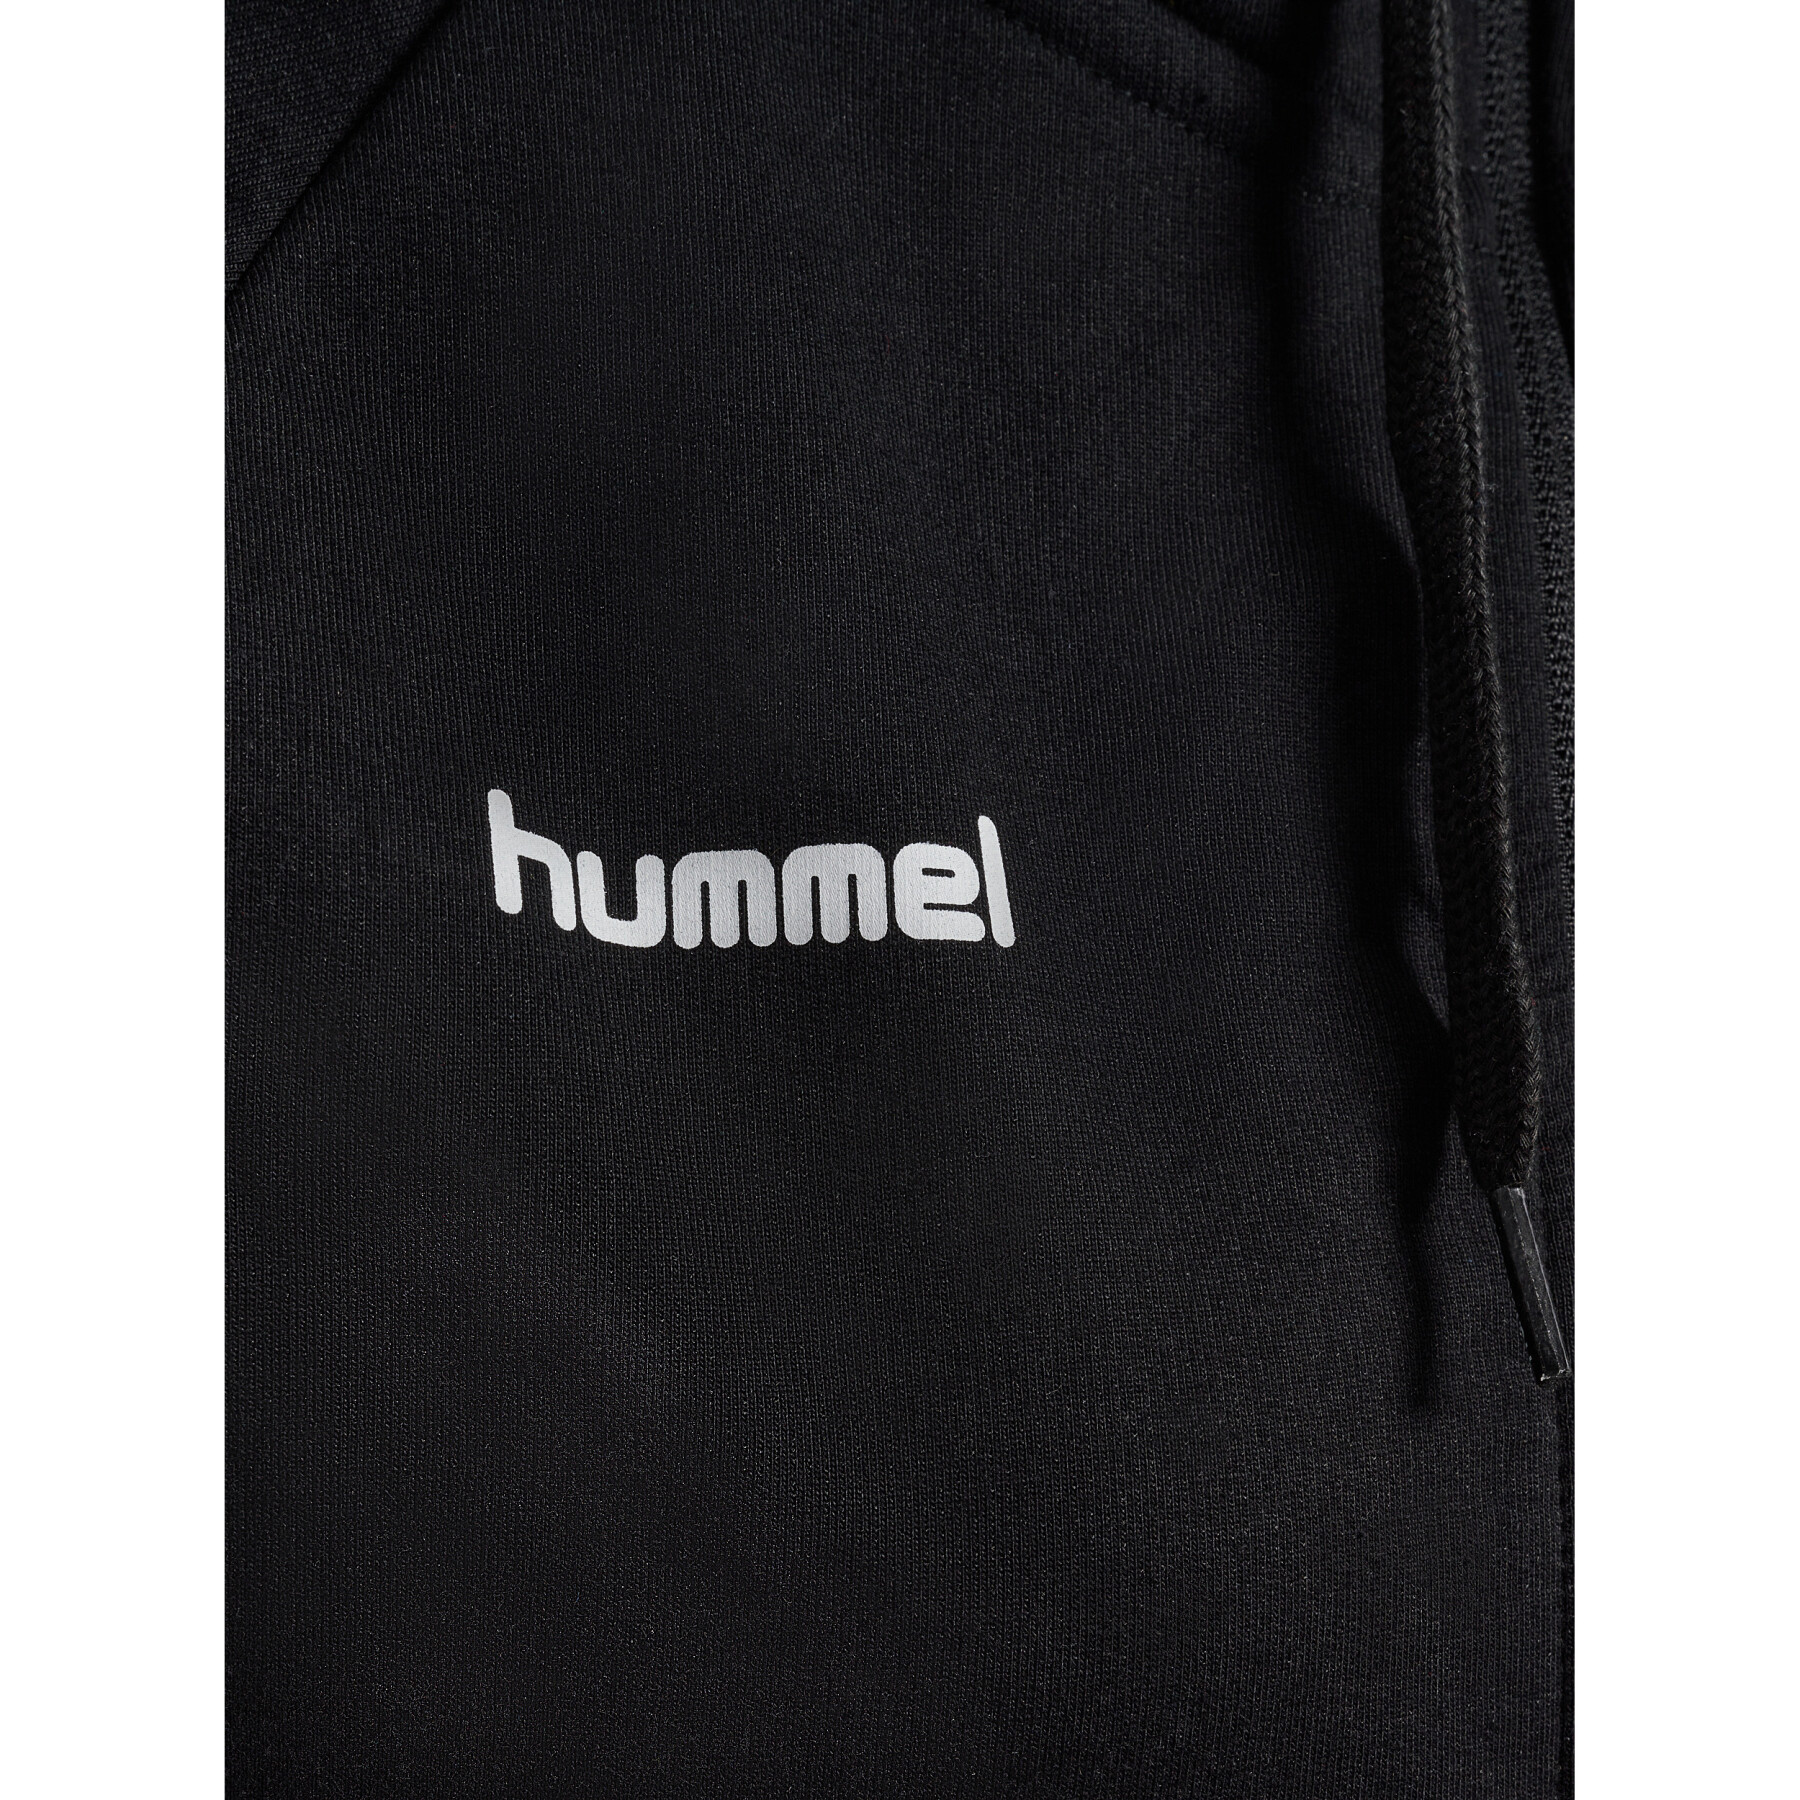 Women's zip-up jacket Hummel Hmlgo